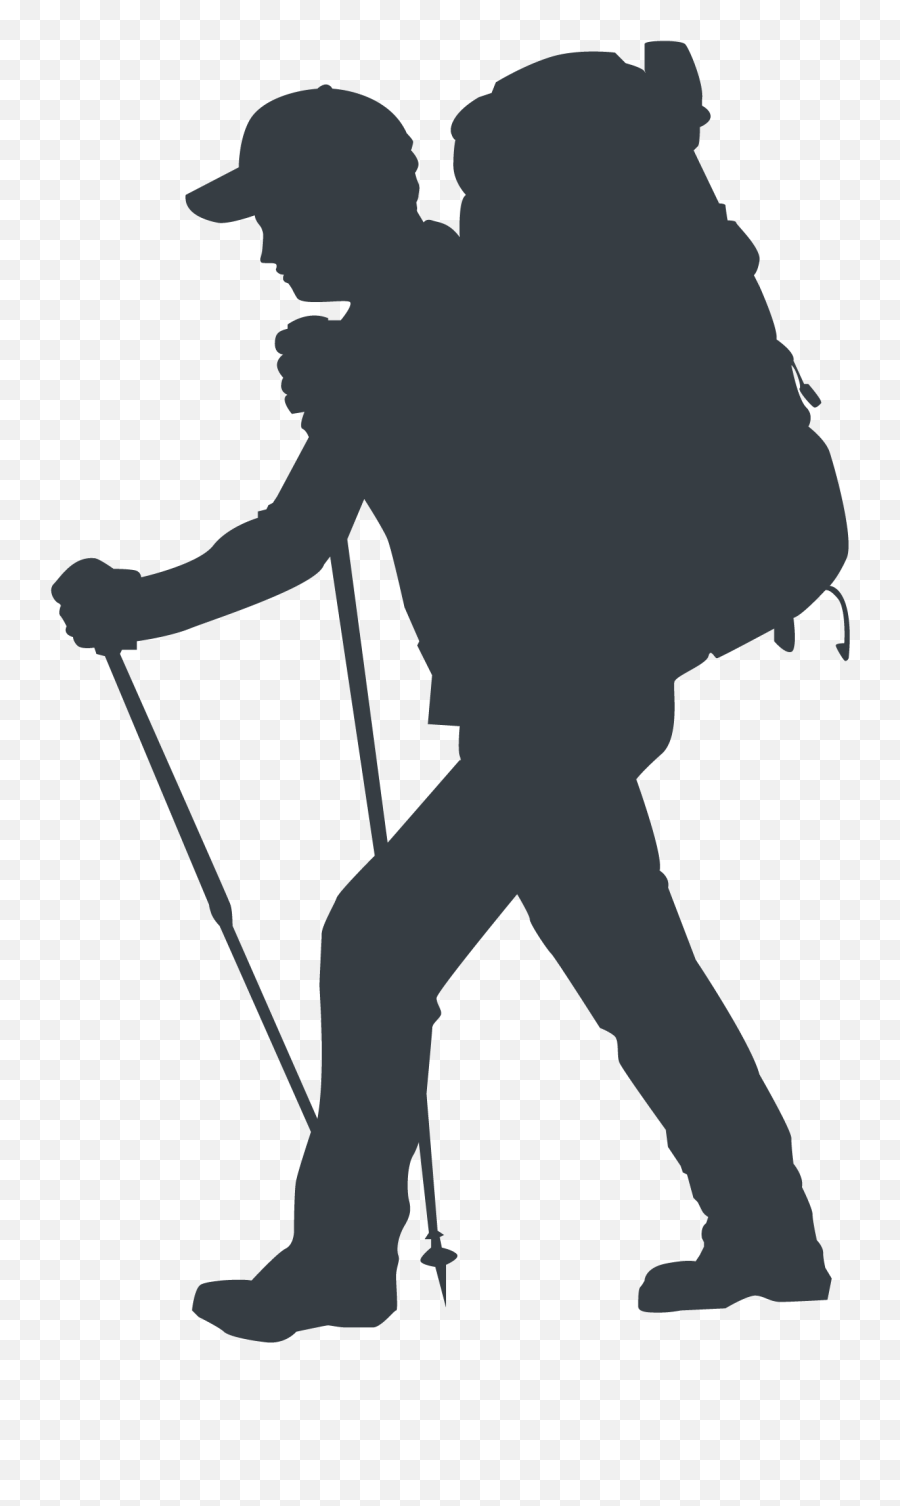 Hiking - Hiking People Png Silhouette Emoji,Hiker Png